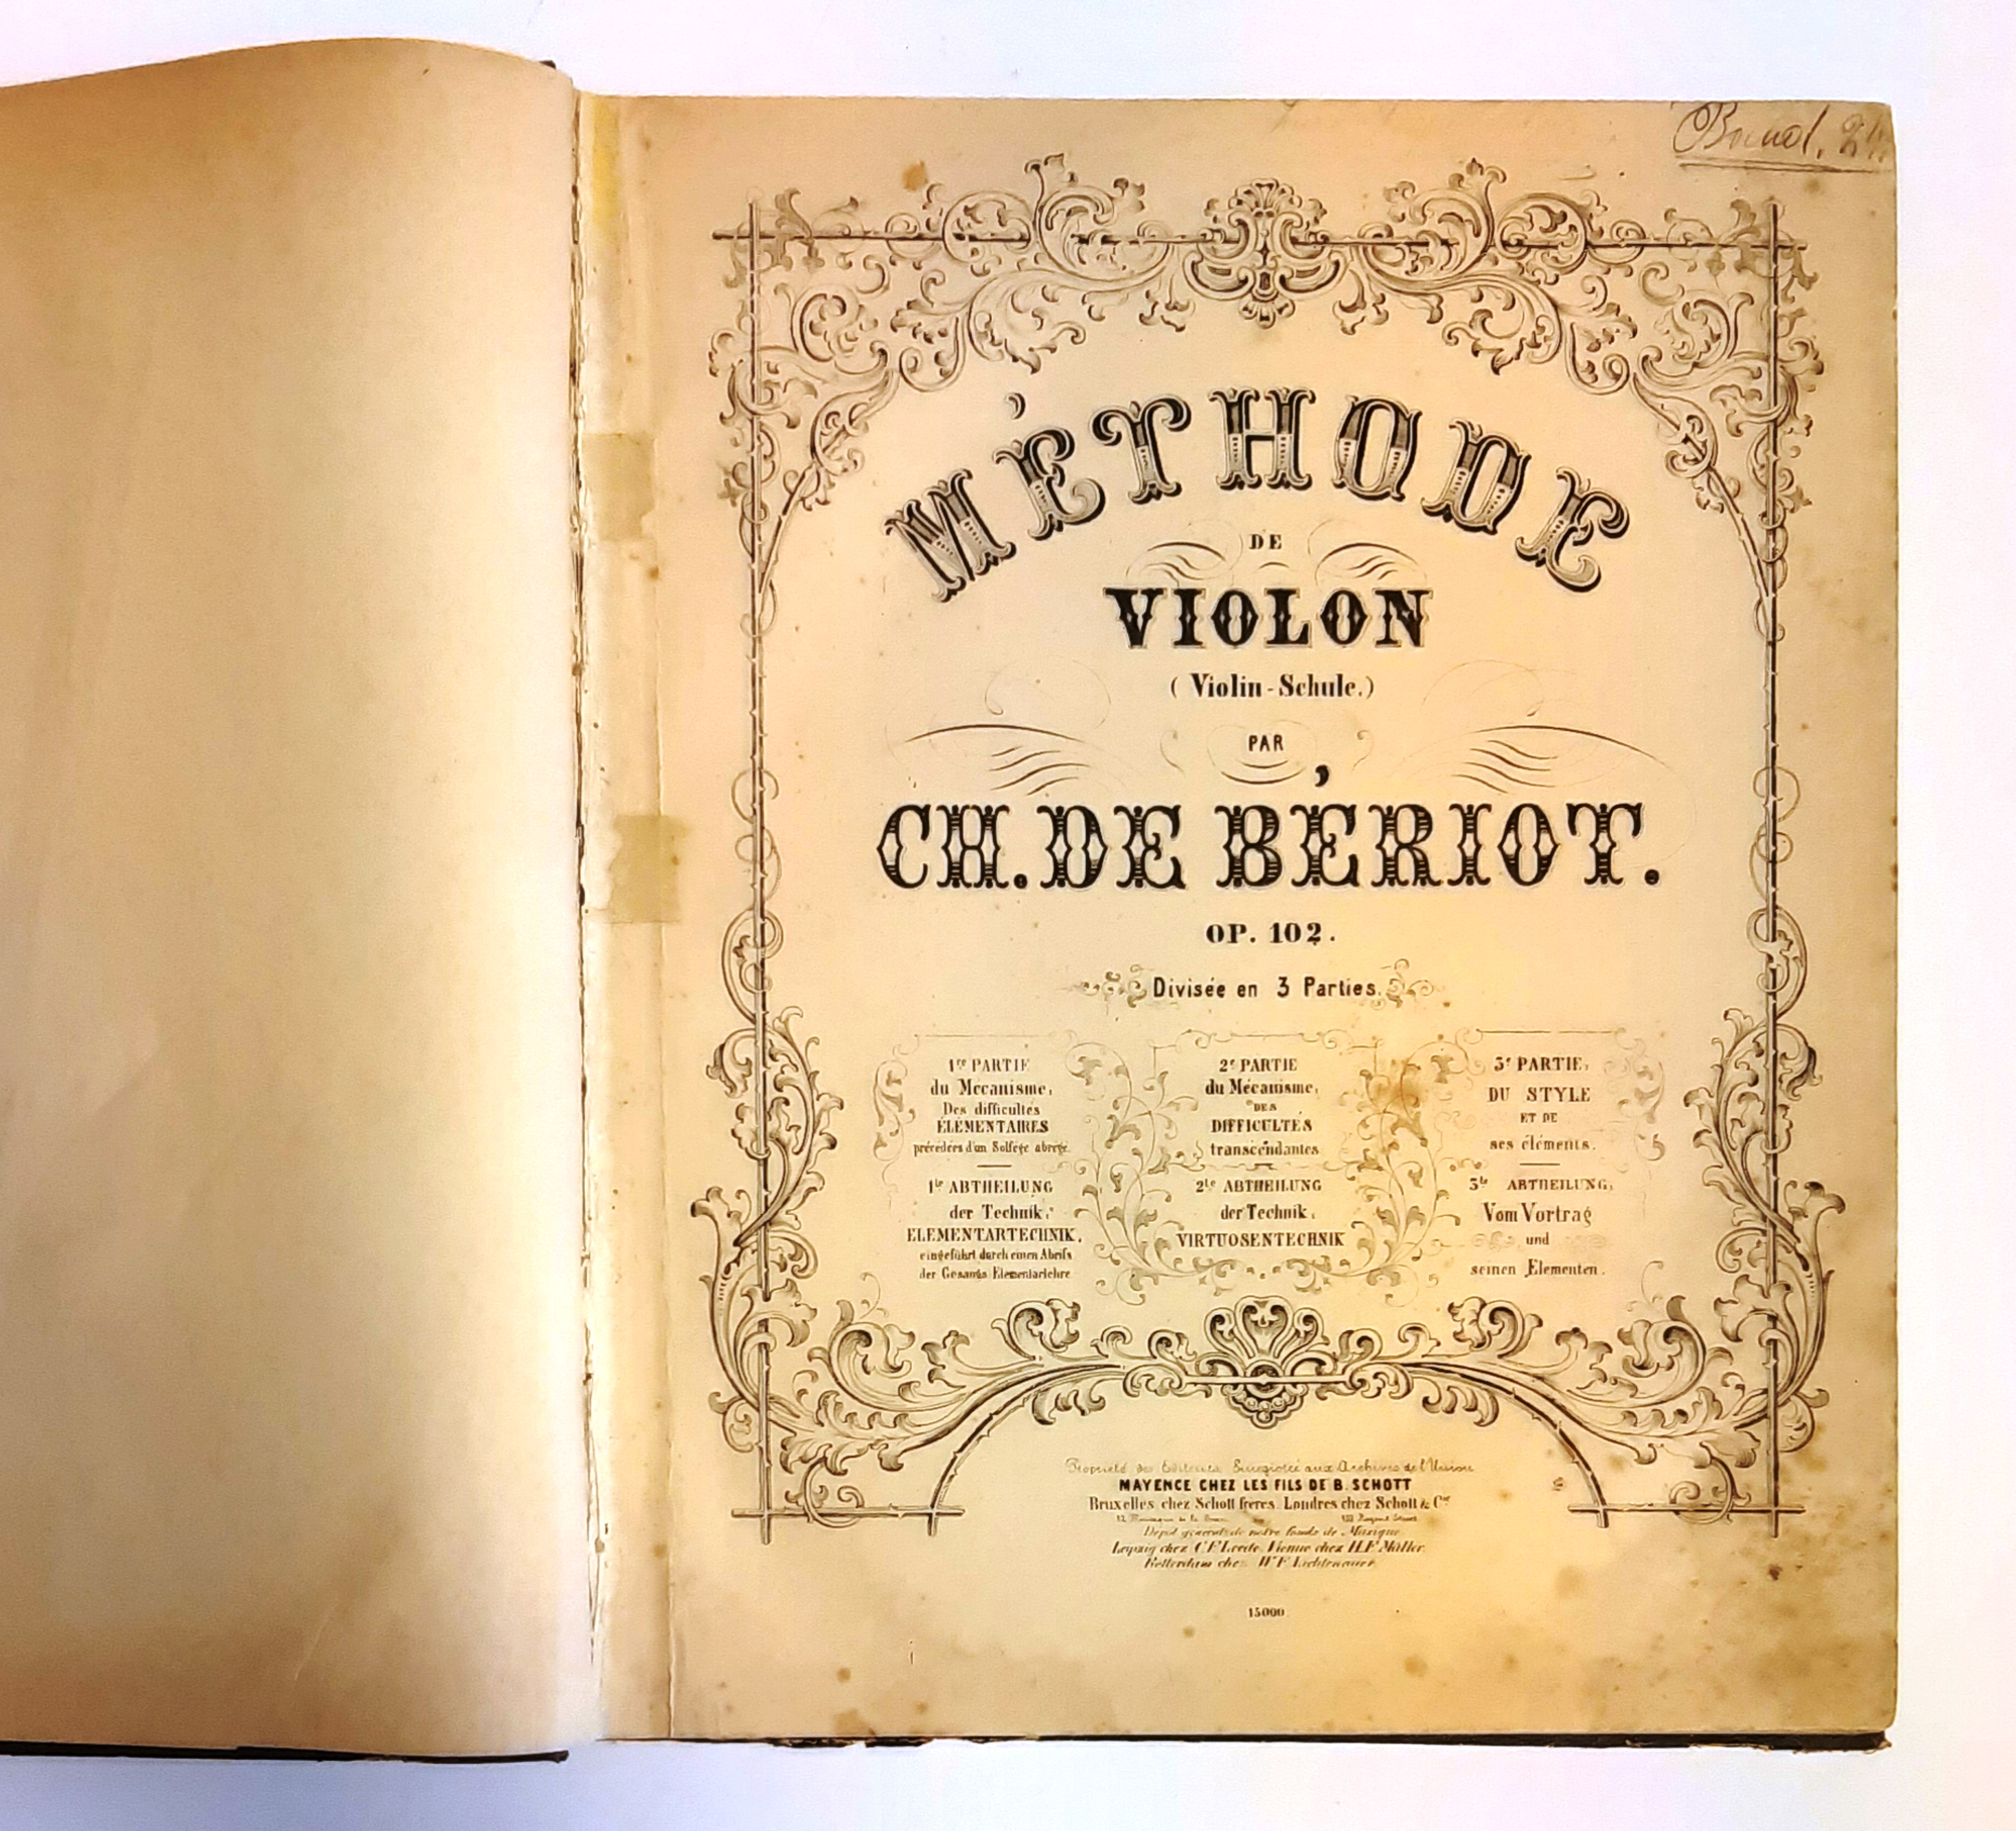 Beriot, Ch. De  Mèthode de Violon (Violin-Schule). Op. 102. Deuxième partie. Zweiter Teil. 